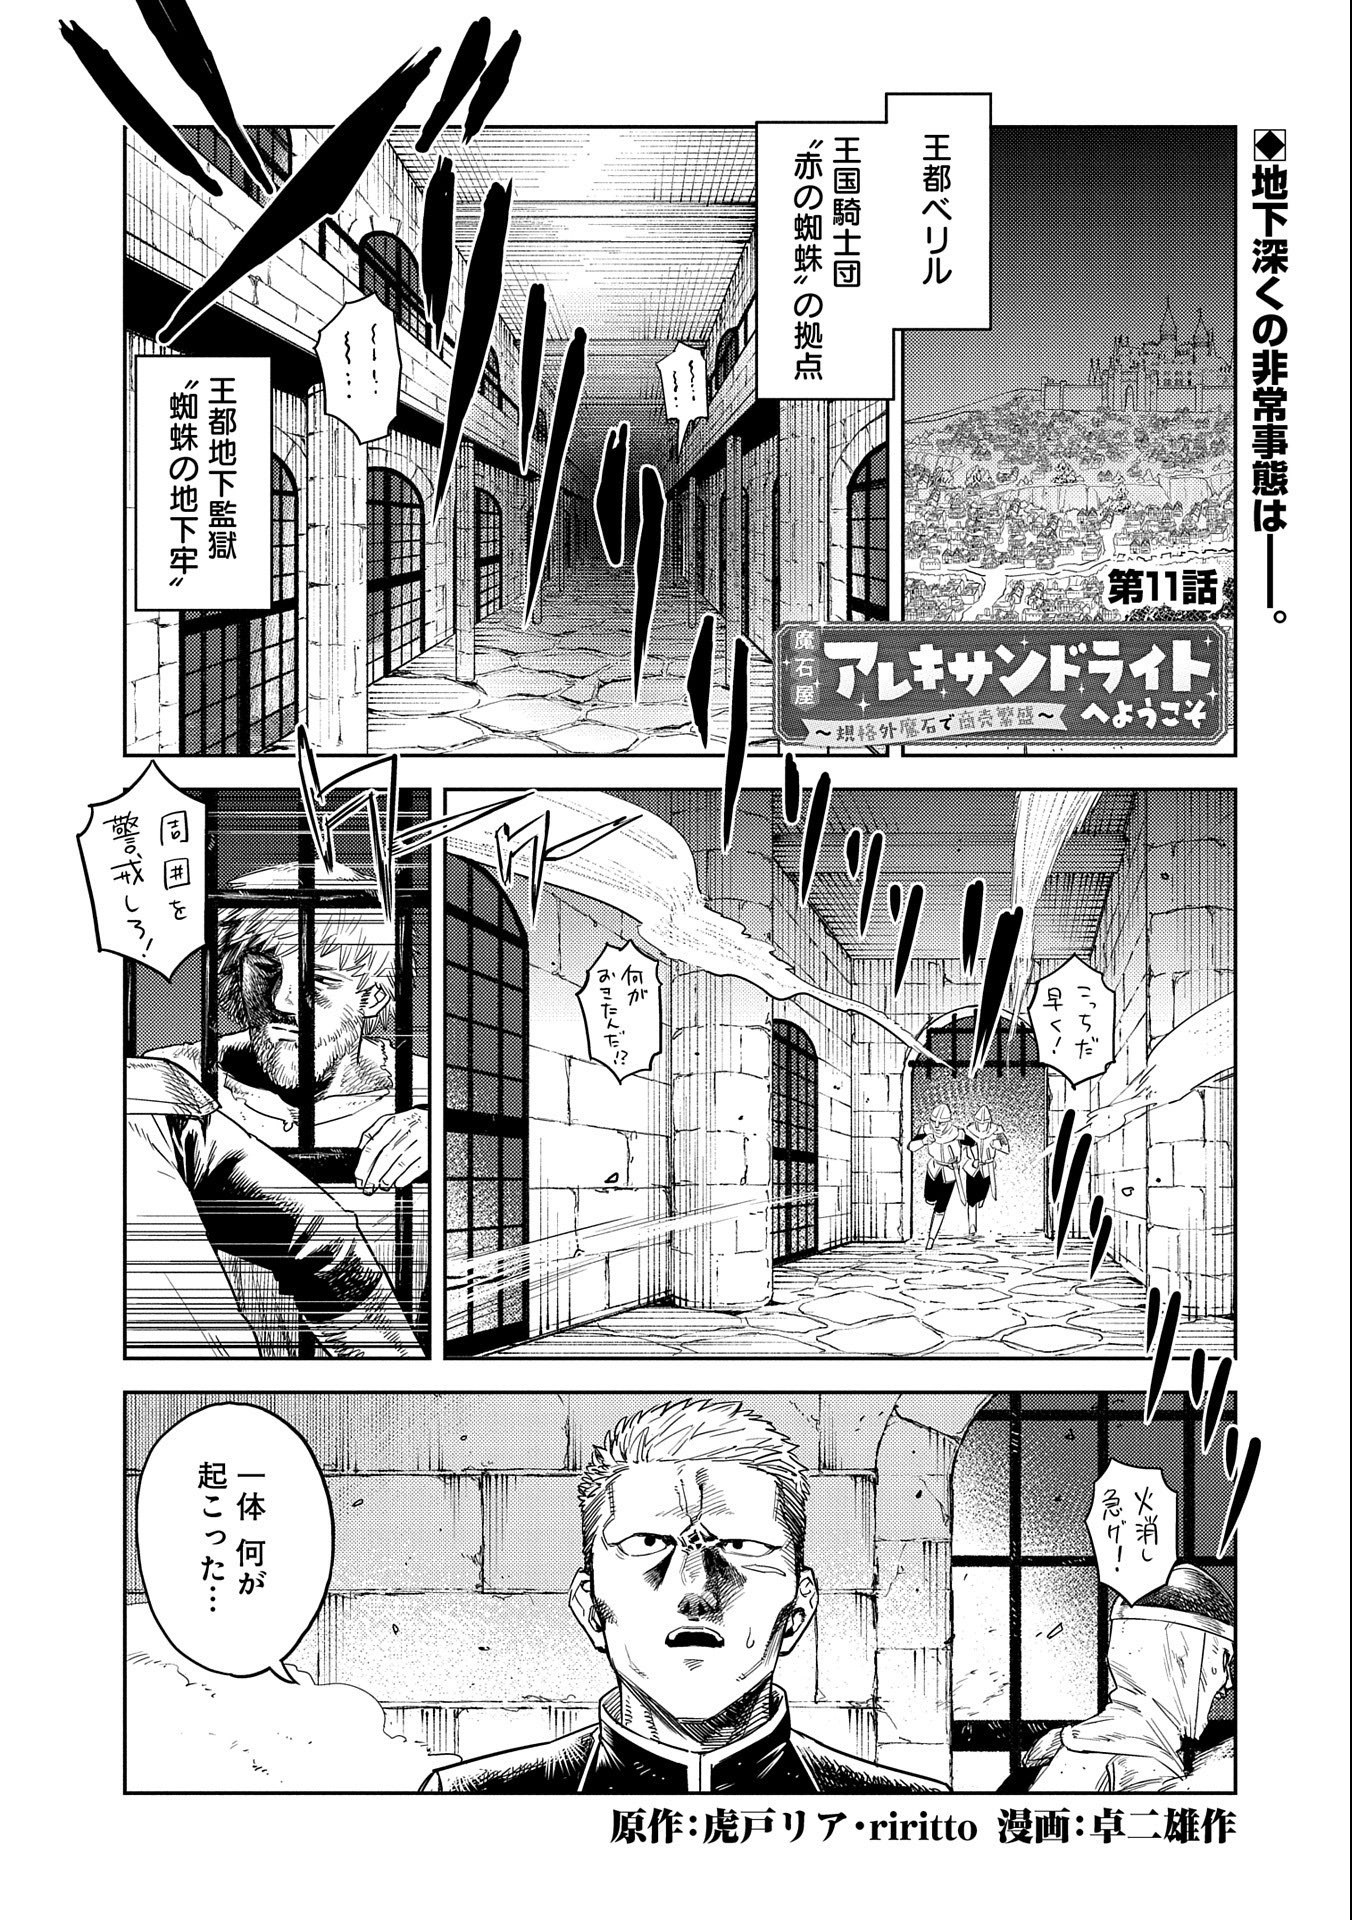 Maishiya Alexandrite E Youkoso: Kikakugai No Tokkyuu Housekishi To Mofumofu Housekijuu No Isekai Hanjouki - Chapter 11 - Page 1